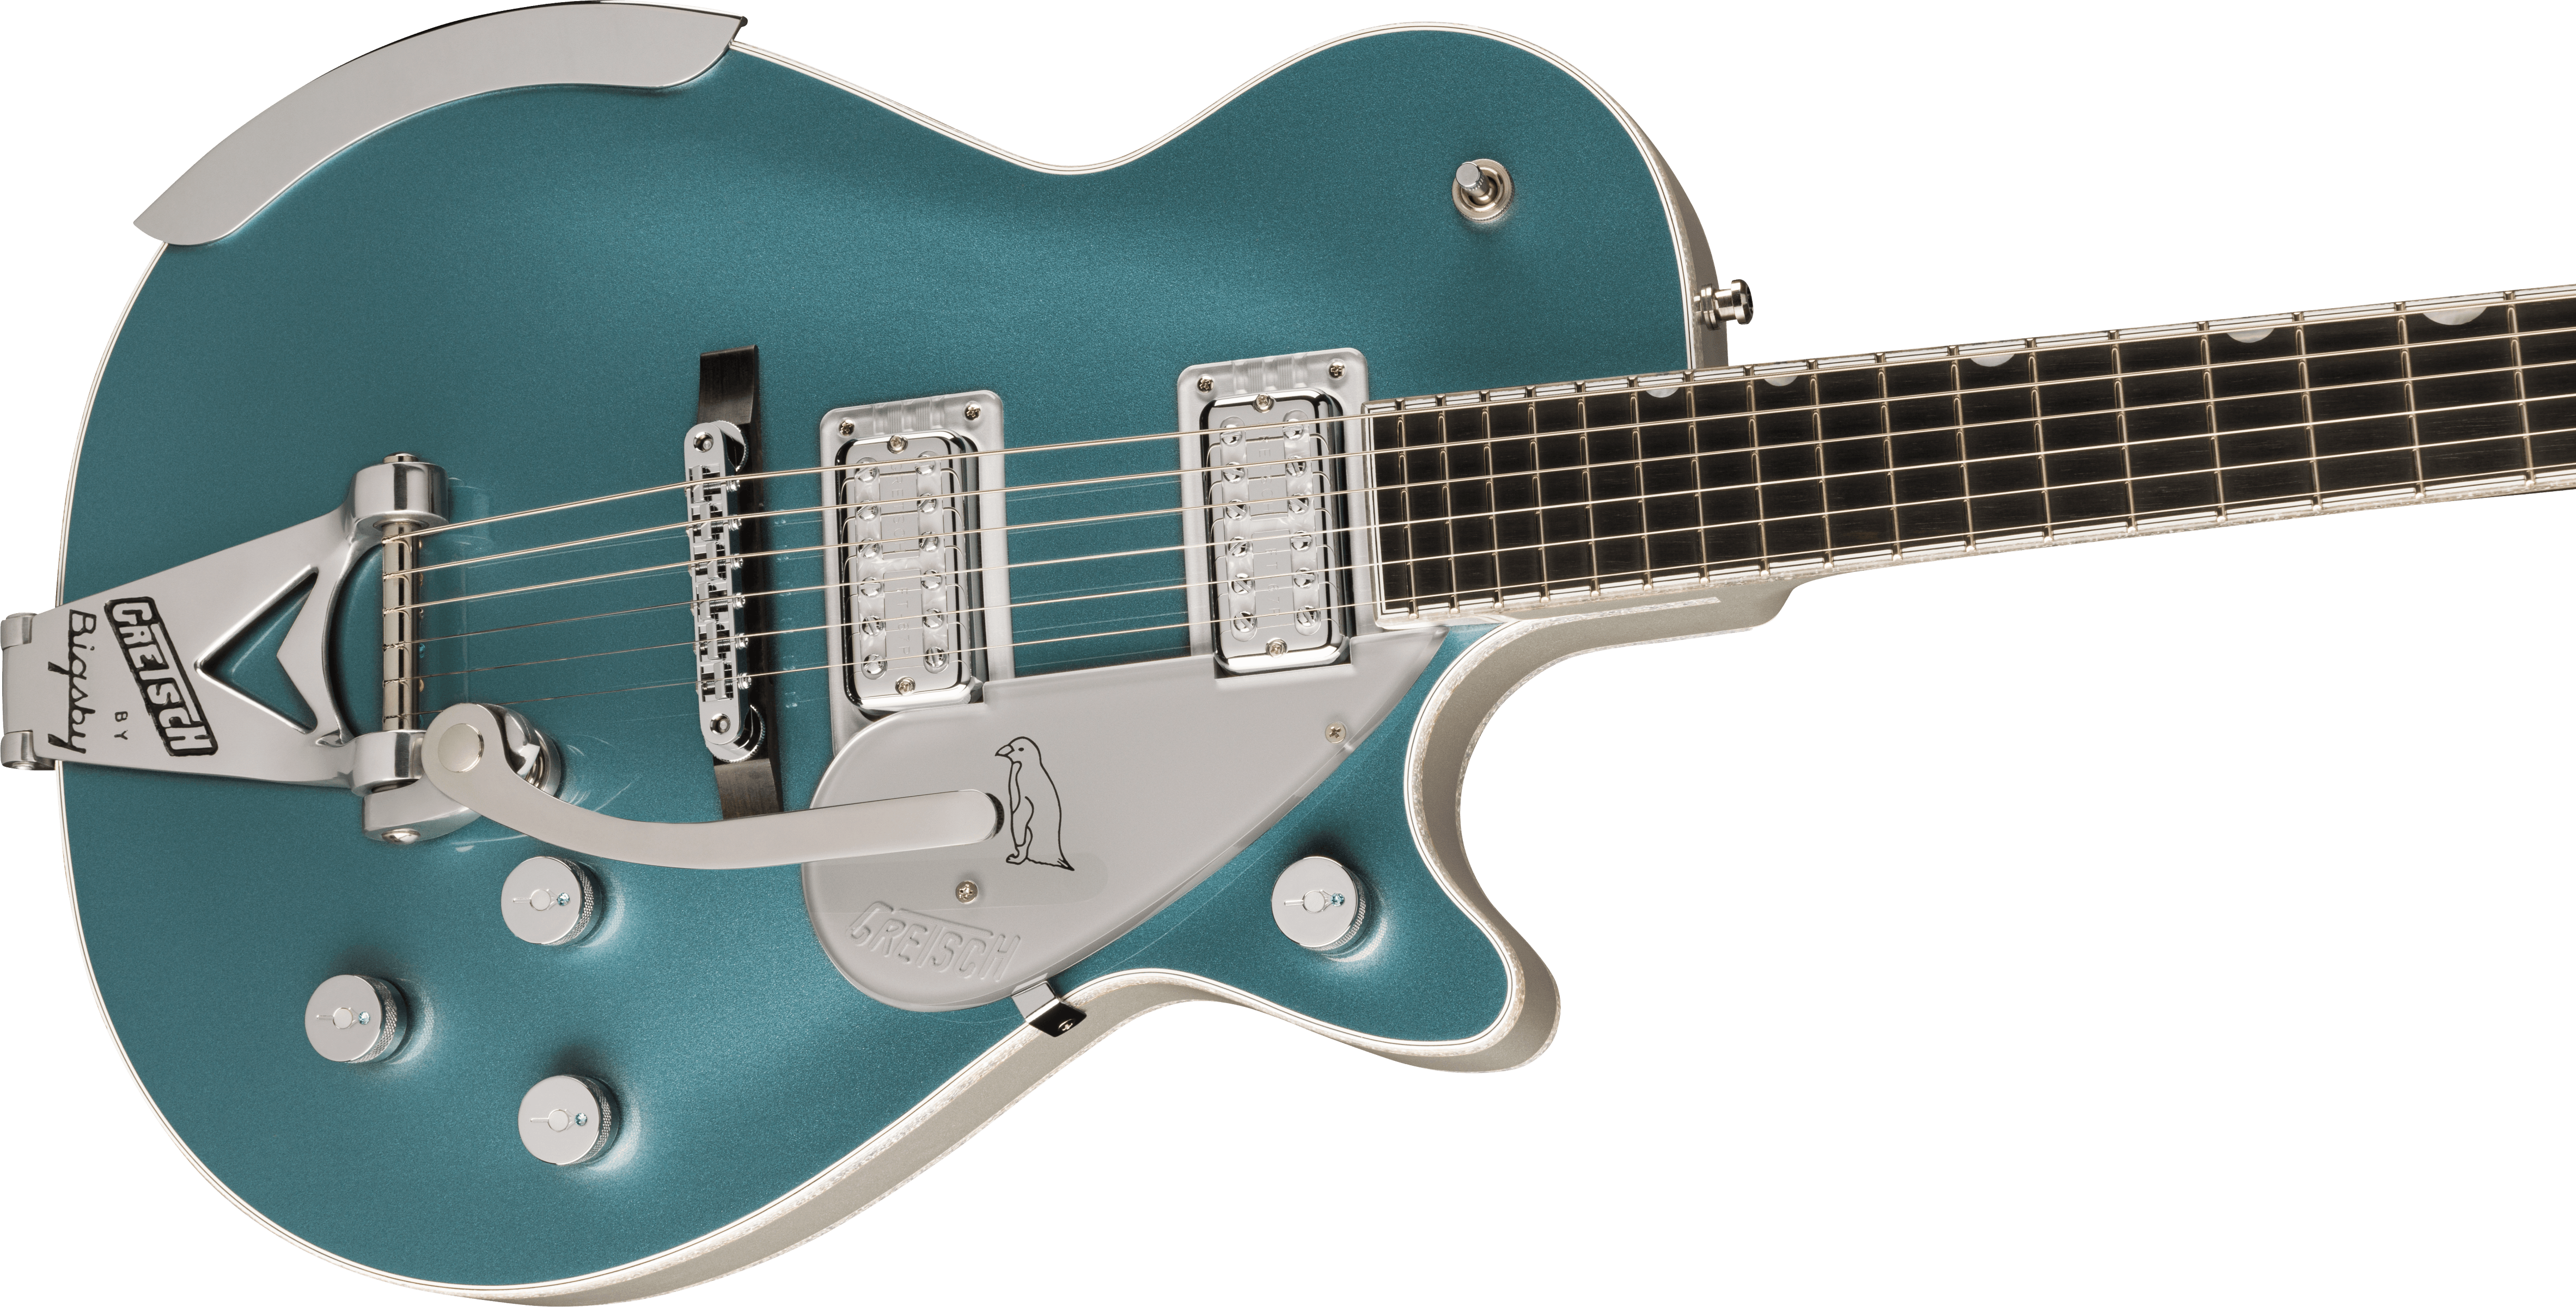 Gretsch G6134t-140 Ltd 140th Double-platinum Penguin Bigsby Pro Jap 2h Trem Eb - Two-tone Stone / Pure Platinum - Guitarra eléctrica de corte único. -